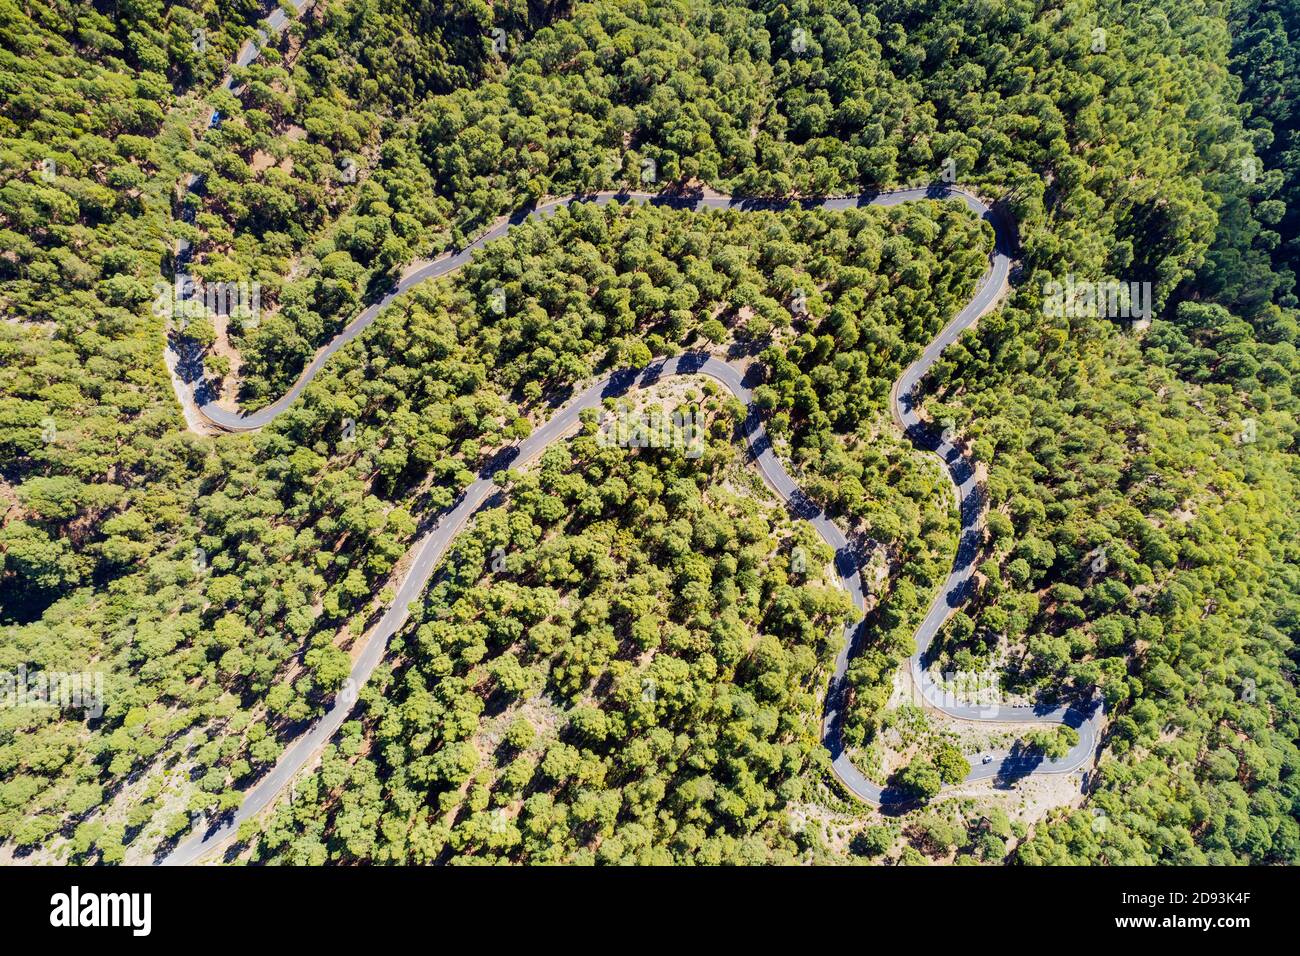 Europa, España, Islas Canarias, La Palma, de la Biosfera por la Unesco sitio, vista aérea de una sinuosa carretera de montaña Foto de stock